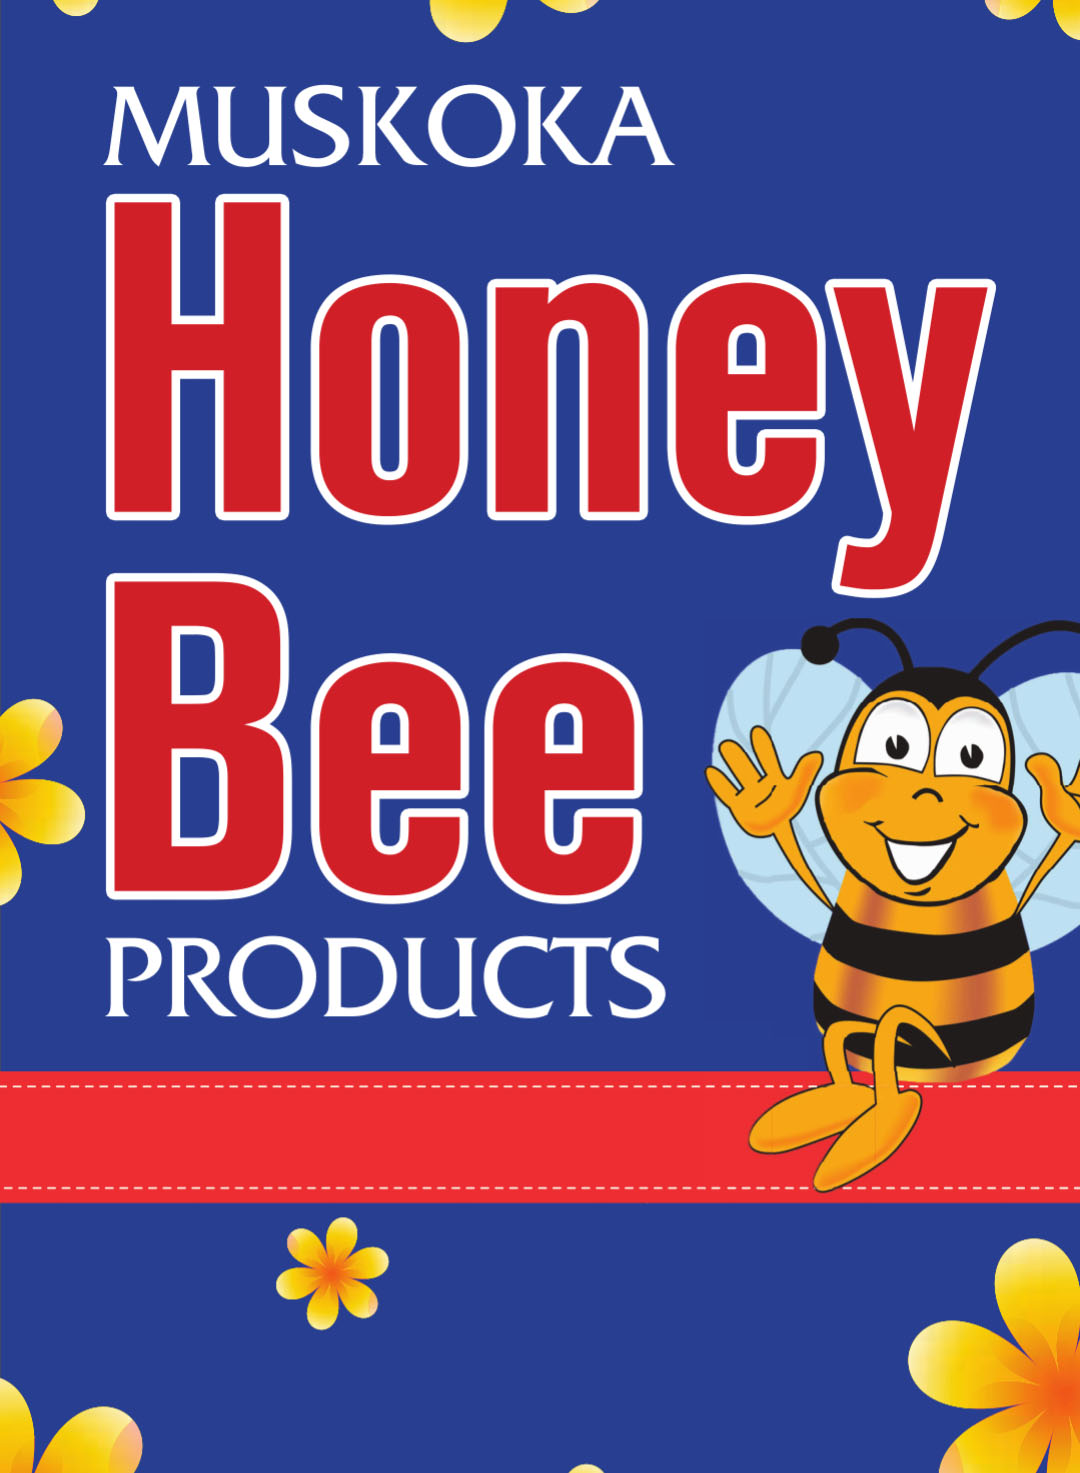 Muskoka Honey Bee Products Inc.